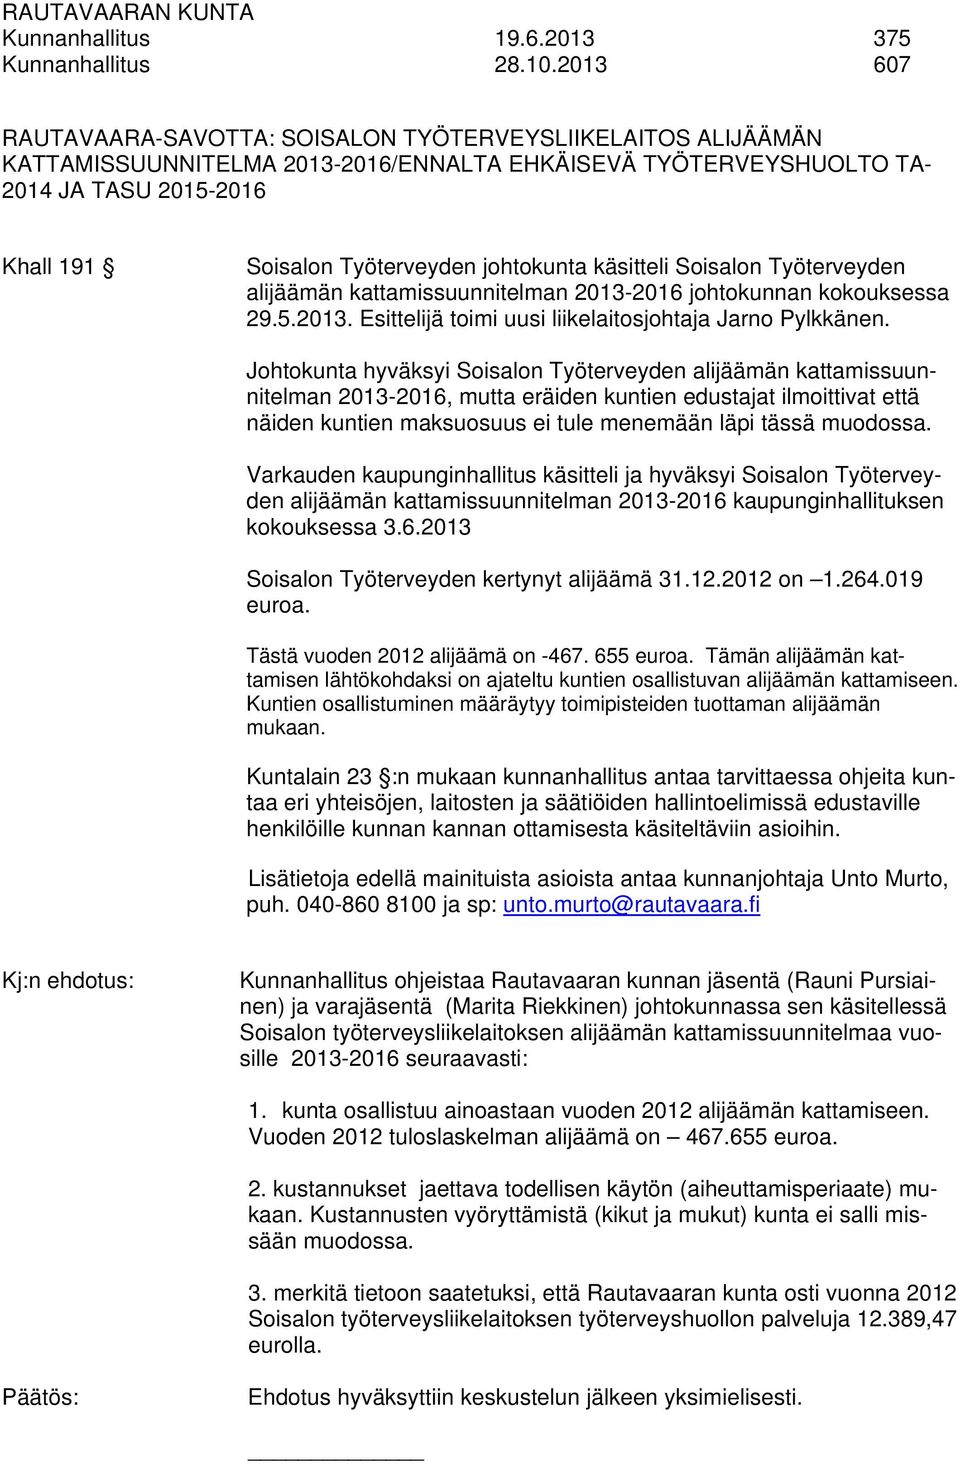 johtokunta käsitteli Soisalon Työterveyden alijäämän kattamissuunnitelman 2013-2016 johtokunnan kokouksessa 29.5.2013. Esittelijä toimi uusi liikelaitosjohtaja Jarno Pylkkänen.